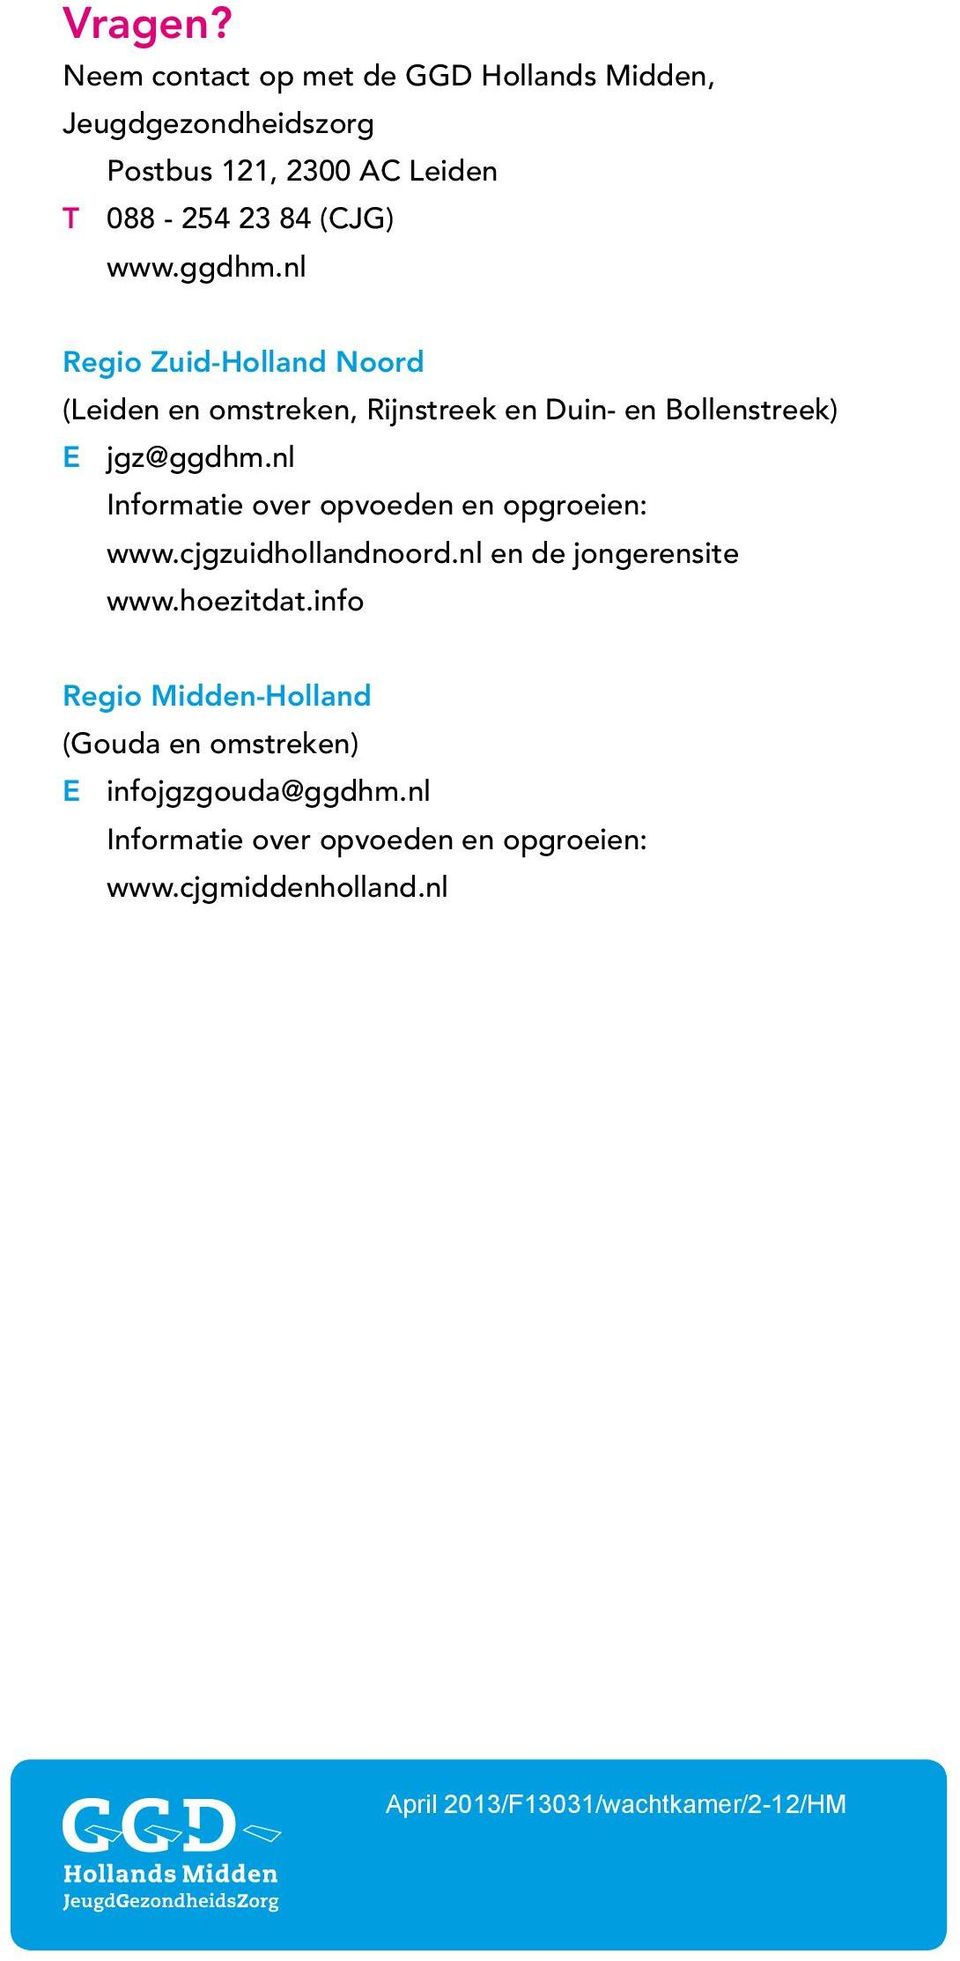 nl Regio Zuid-Holland Noord (Leiden en omstreken, Rijnstreek en Duin- en Bollenstreek) E jgz@ggdhm.